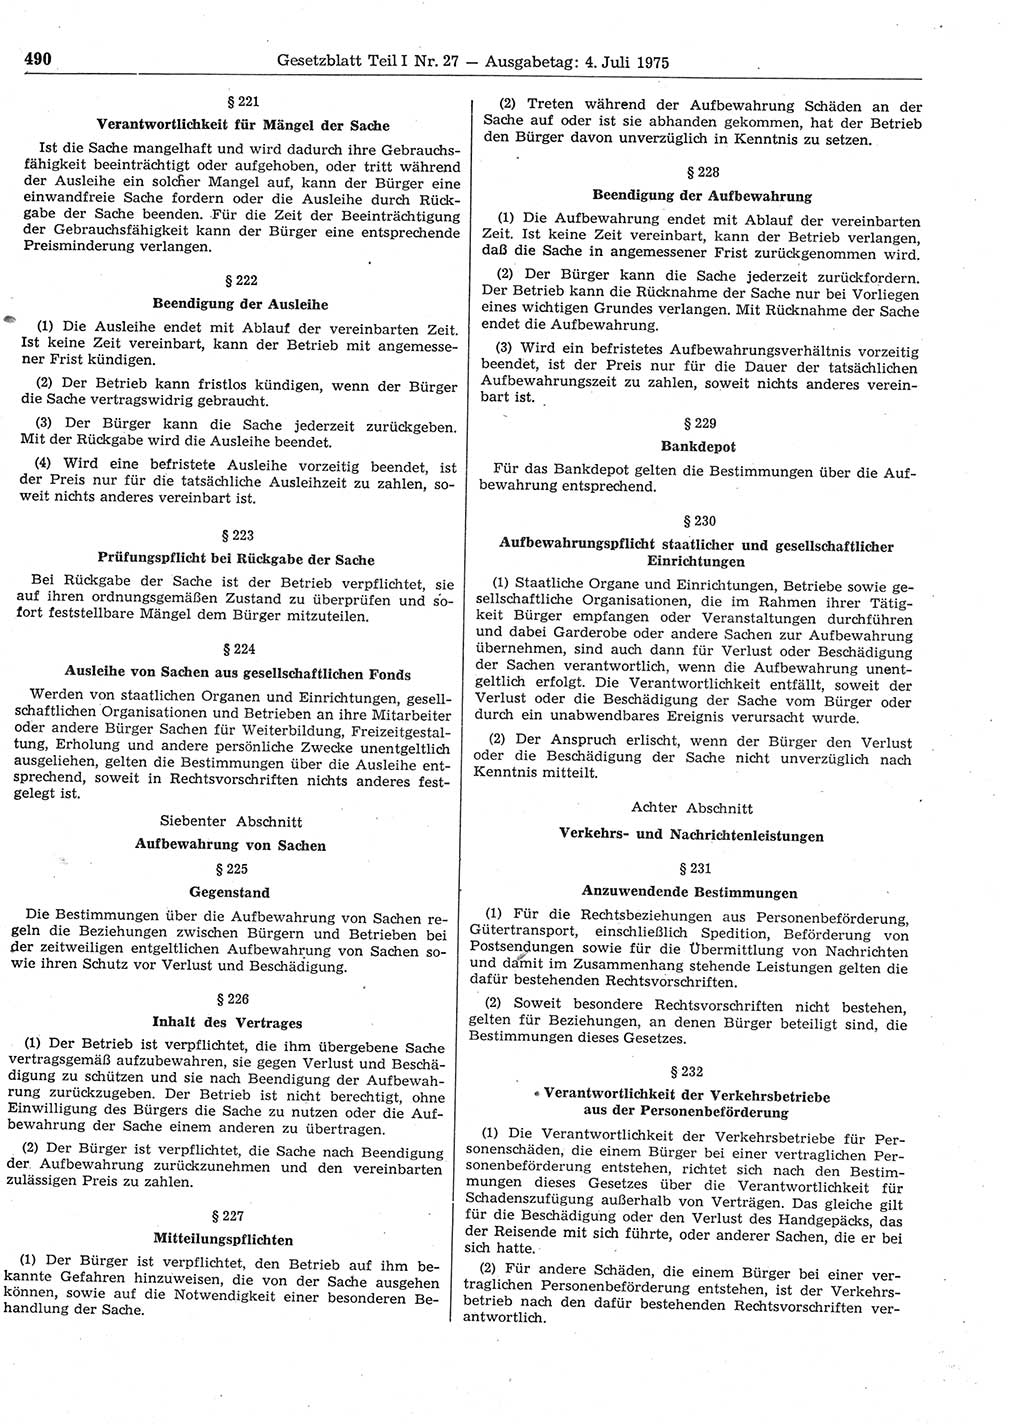 Gesetzblatt (GBl.) der Deutschen Demokratischen Republik (DDR) Teil Ⅰ 1975, Seite 490 (GBl. DDR Ⅰ 1975, S. 490)